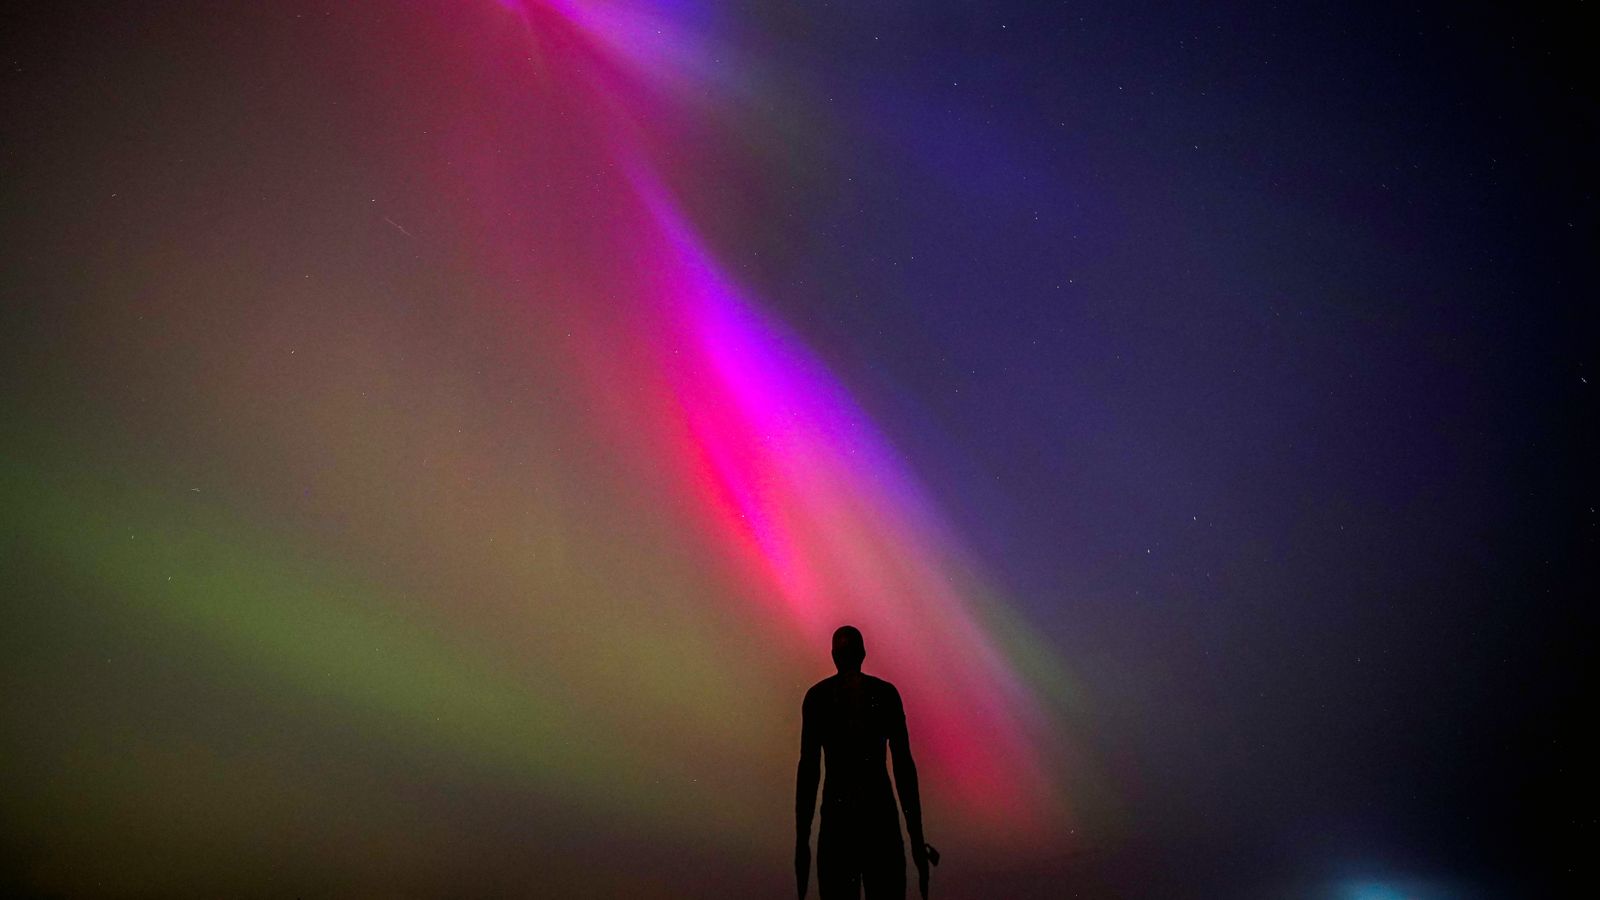 Les aurores boréales pourraient à nouveau être visibles au Royaume-Uni dans quelques semaines |  Actualités scientifiques et technologiques